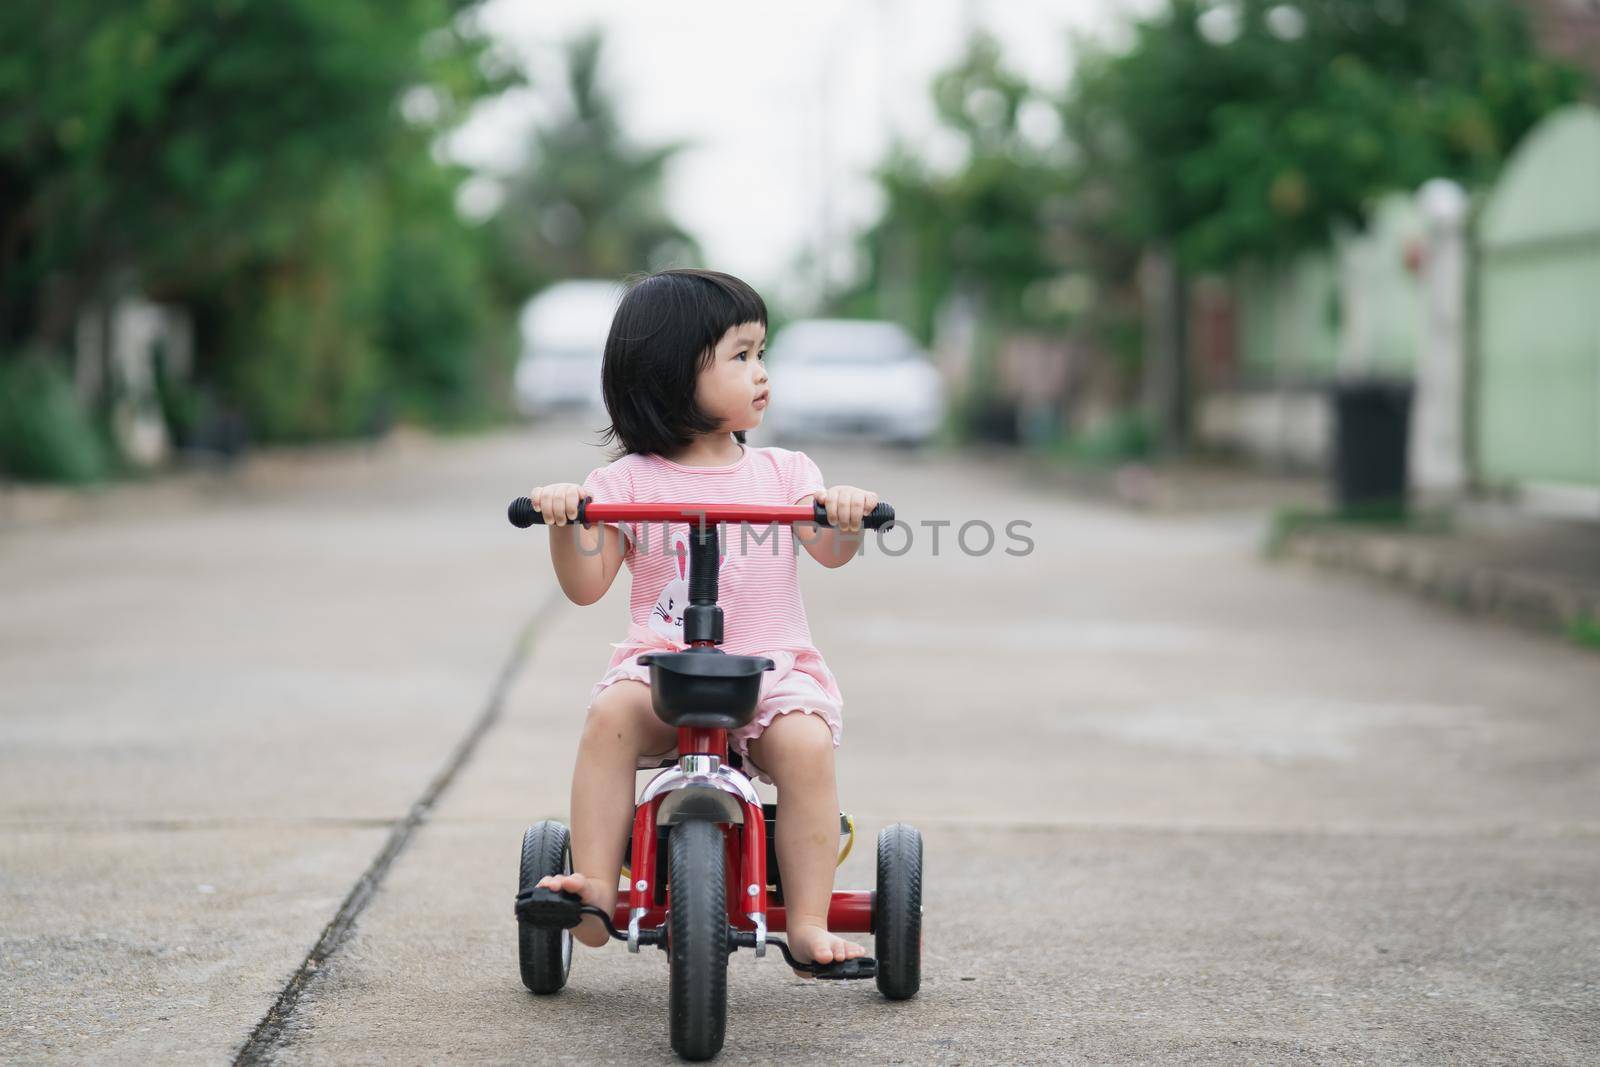 Cute children riding a bike. Kids enjoying a bicycle ride.